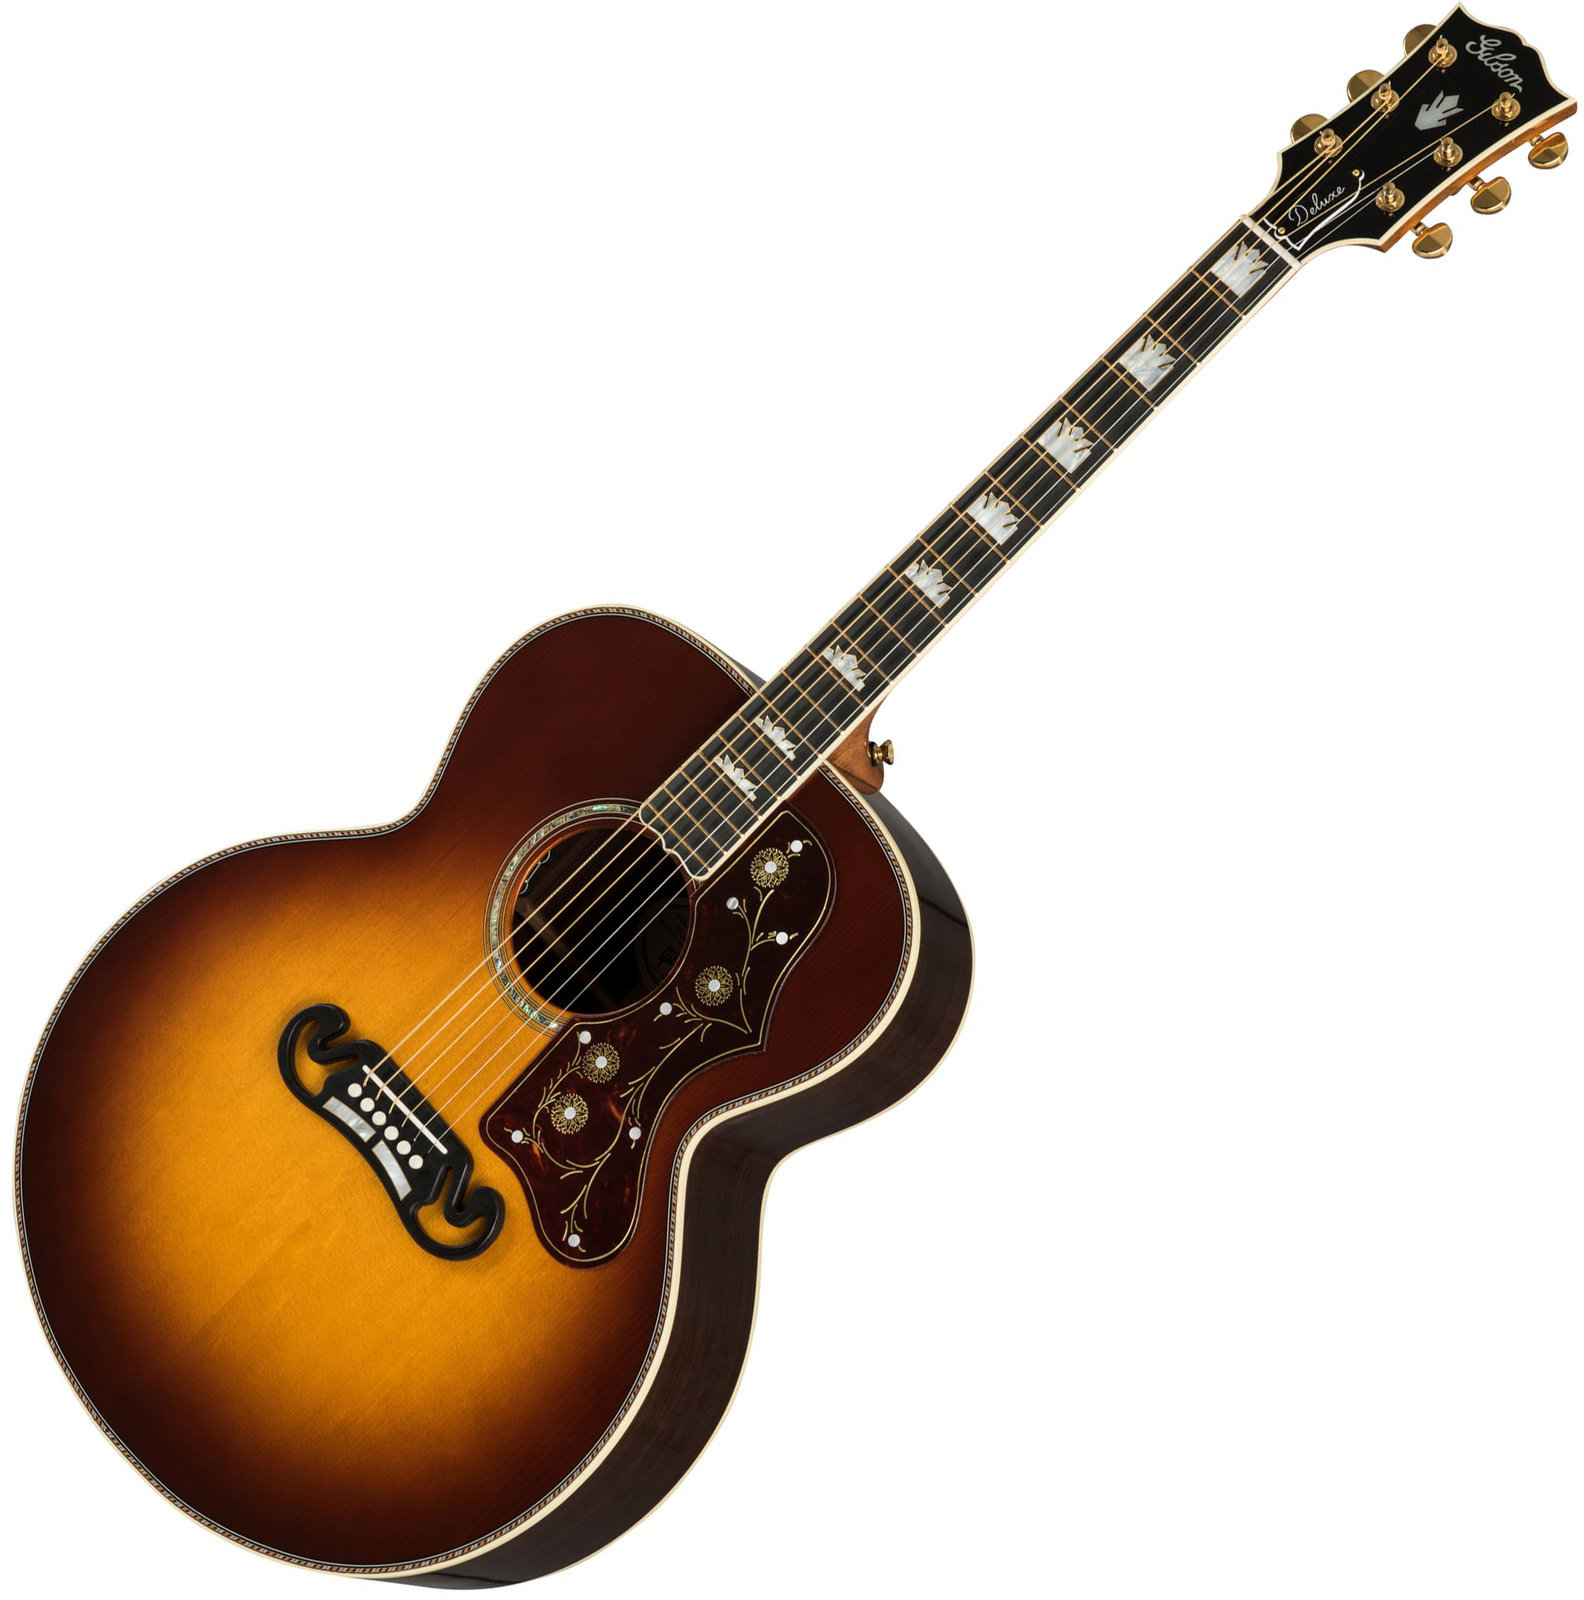 Jumbo elektro-akoestische gitaar Gibson J-200 Deluxe 2019 RW Rosewood Burst